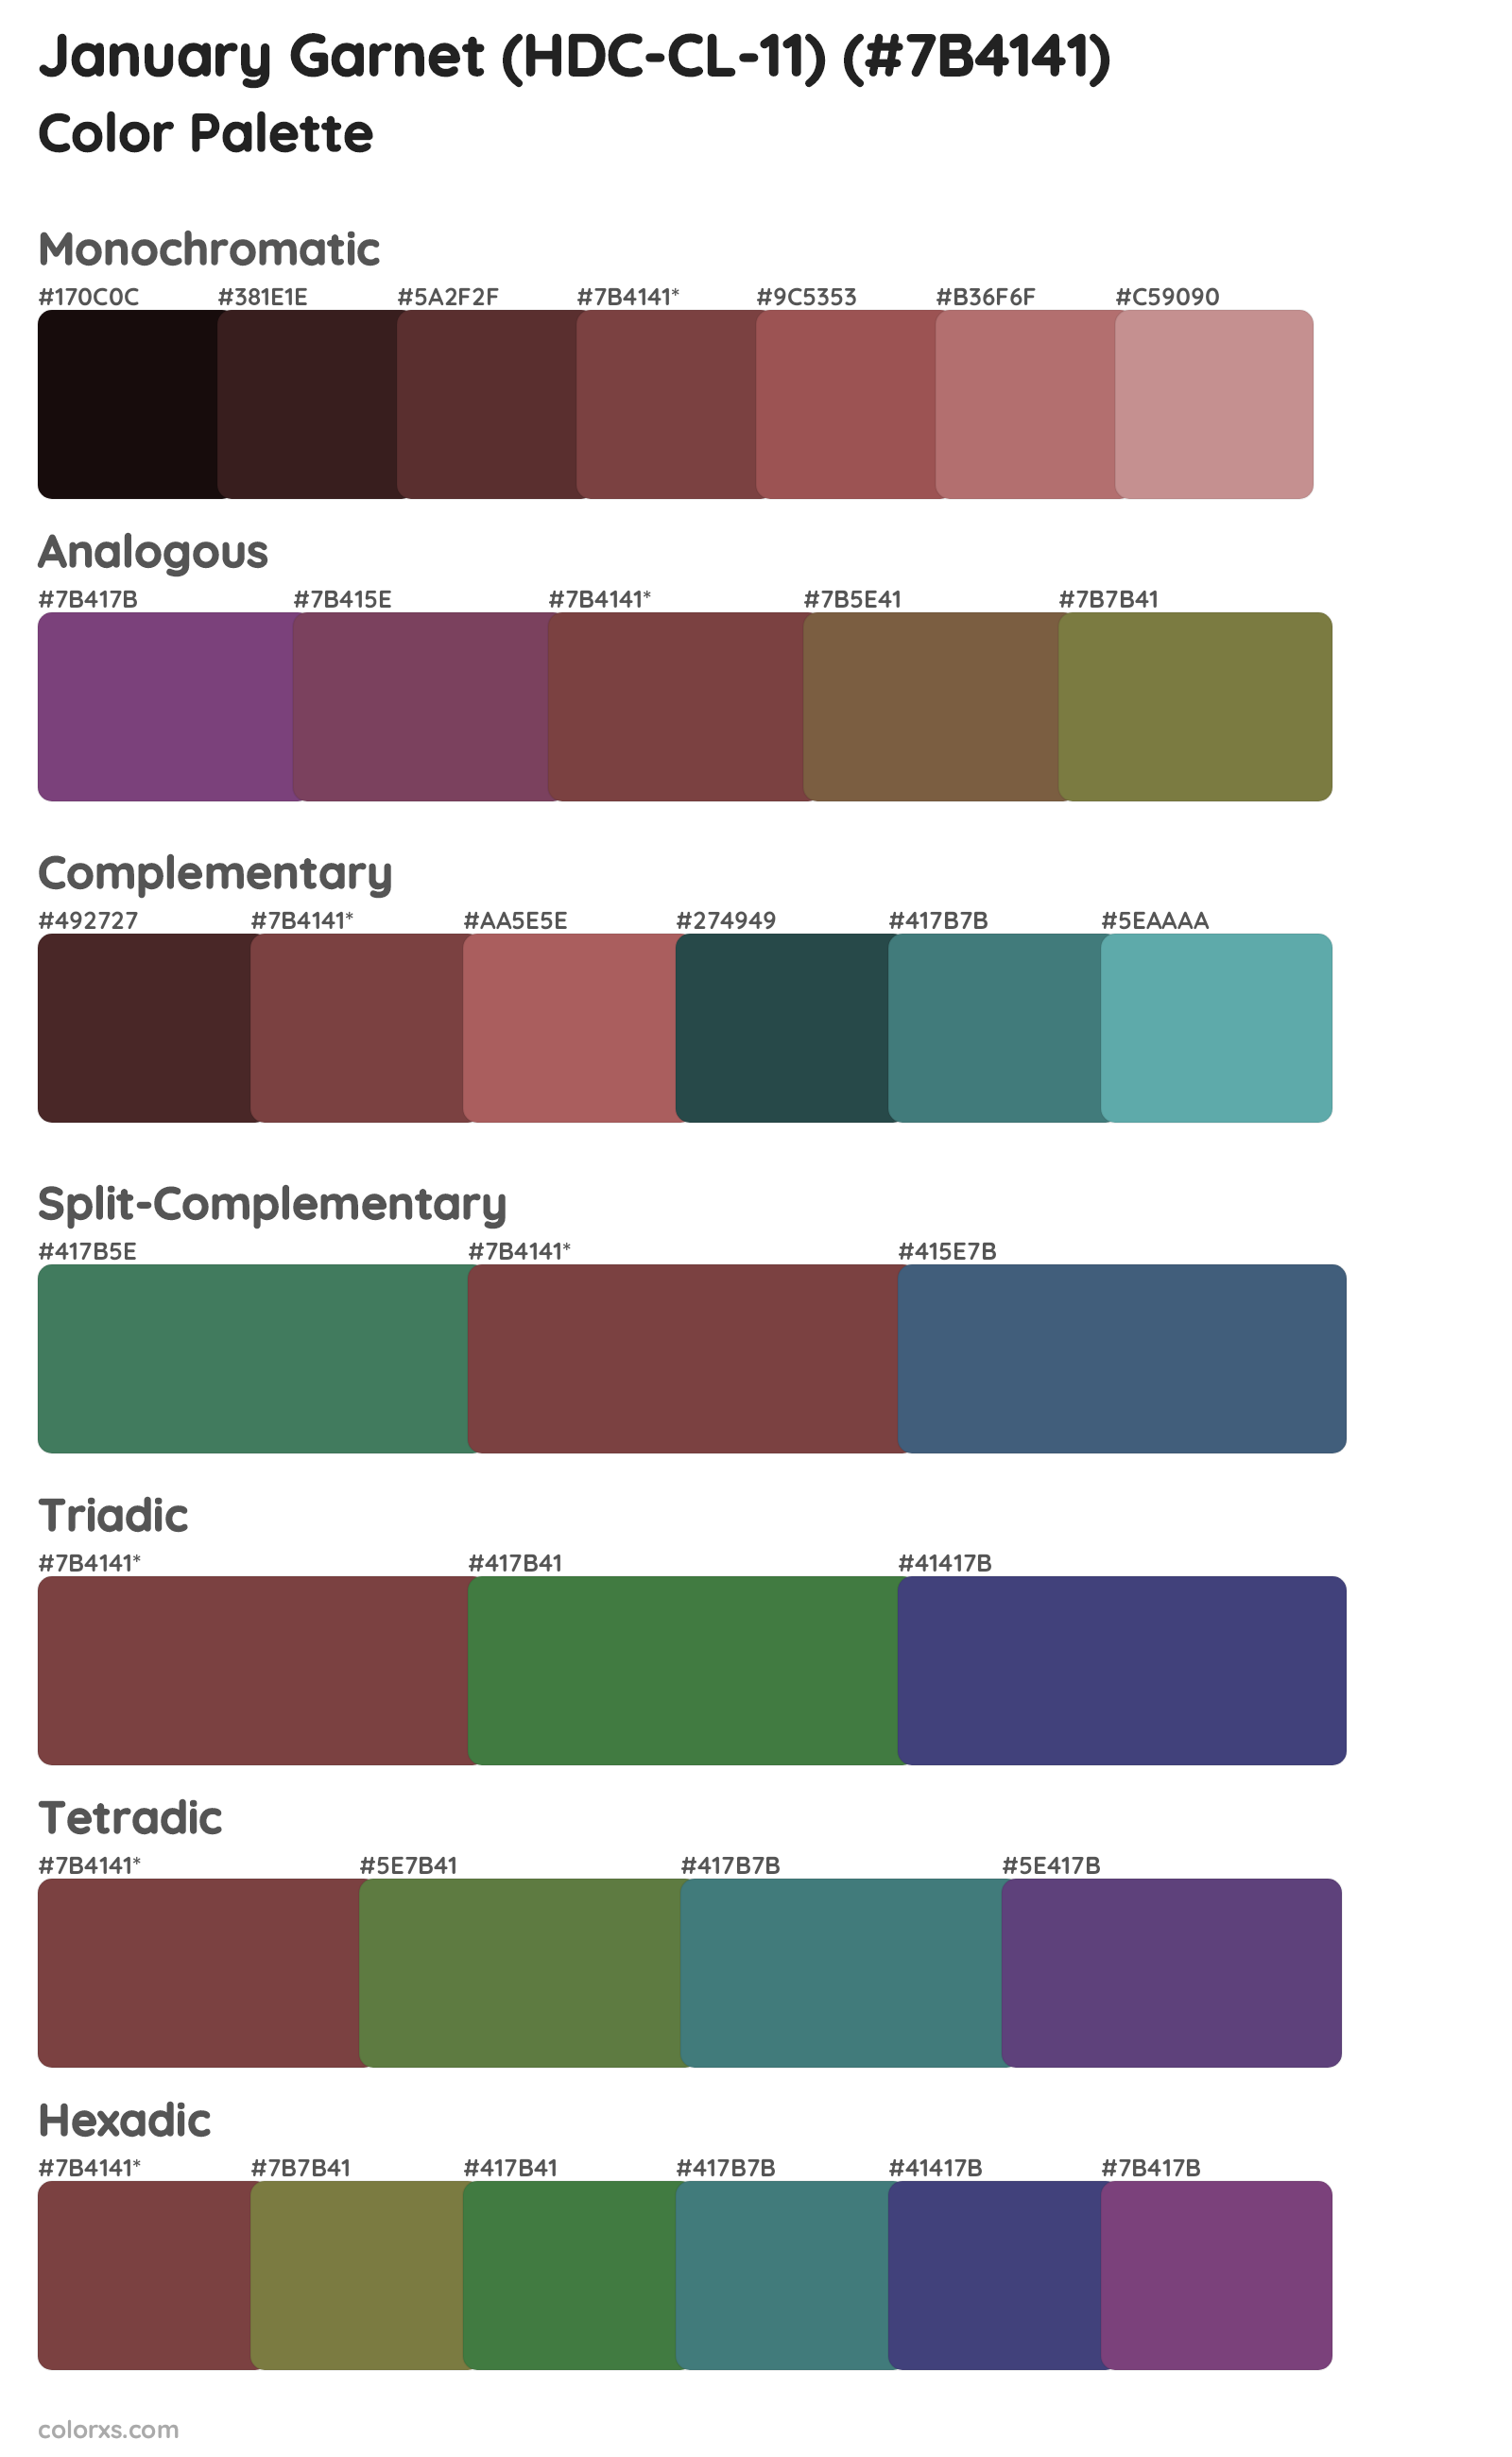 January Garnet (HDC-CL-11) Color Scheme Palettes